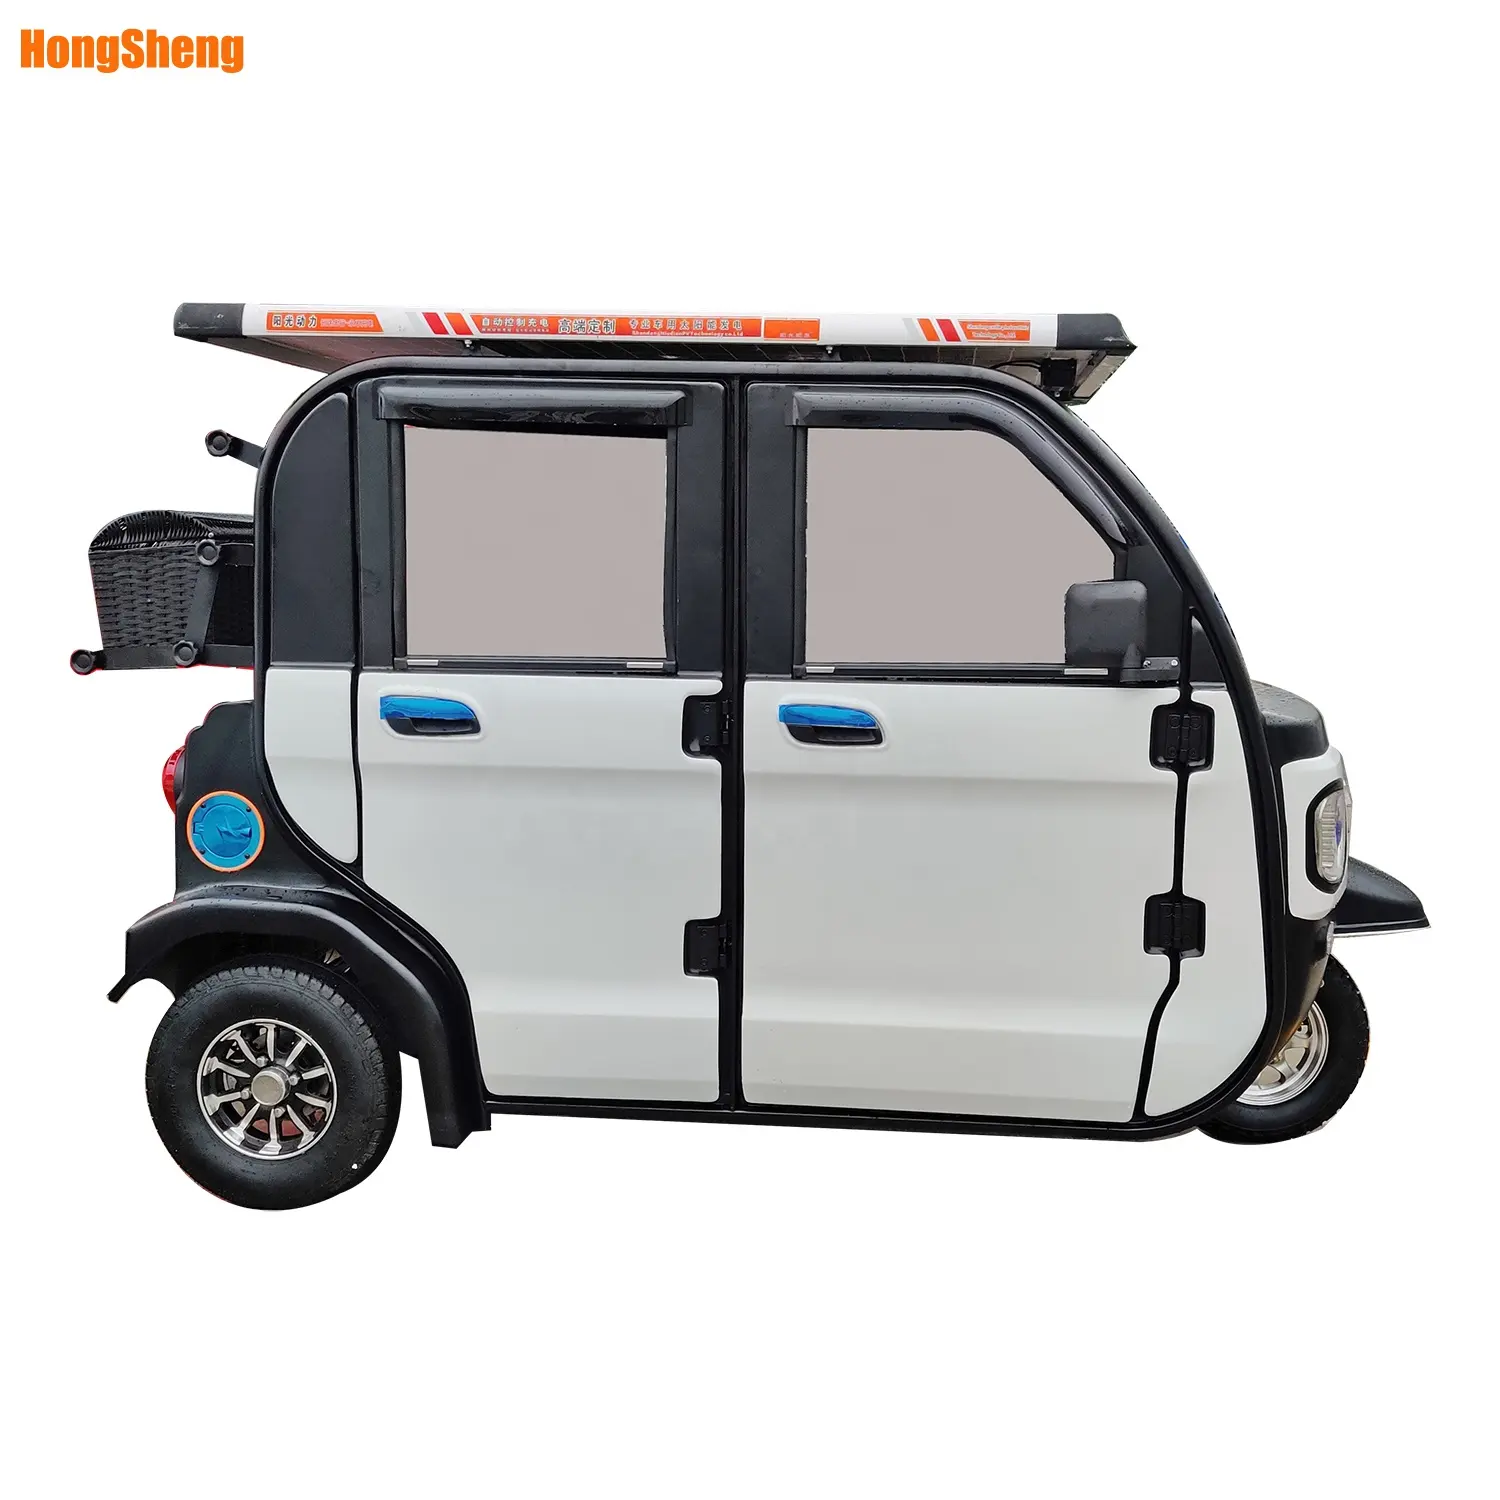 6 passeggeri triciclo elettrico per adulti elettrico Tuk Tuk con pannelli solari